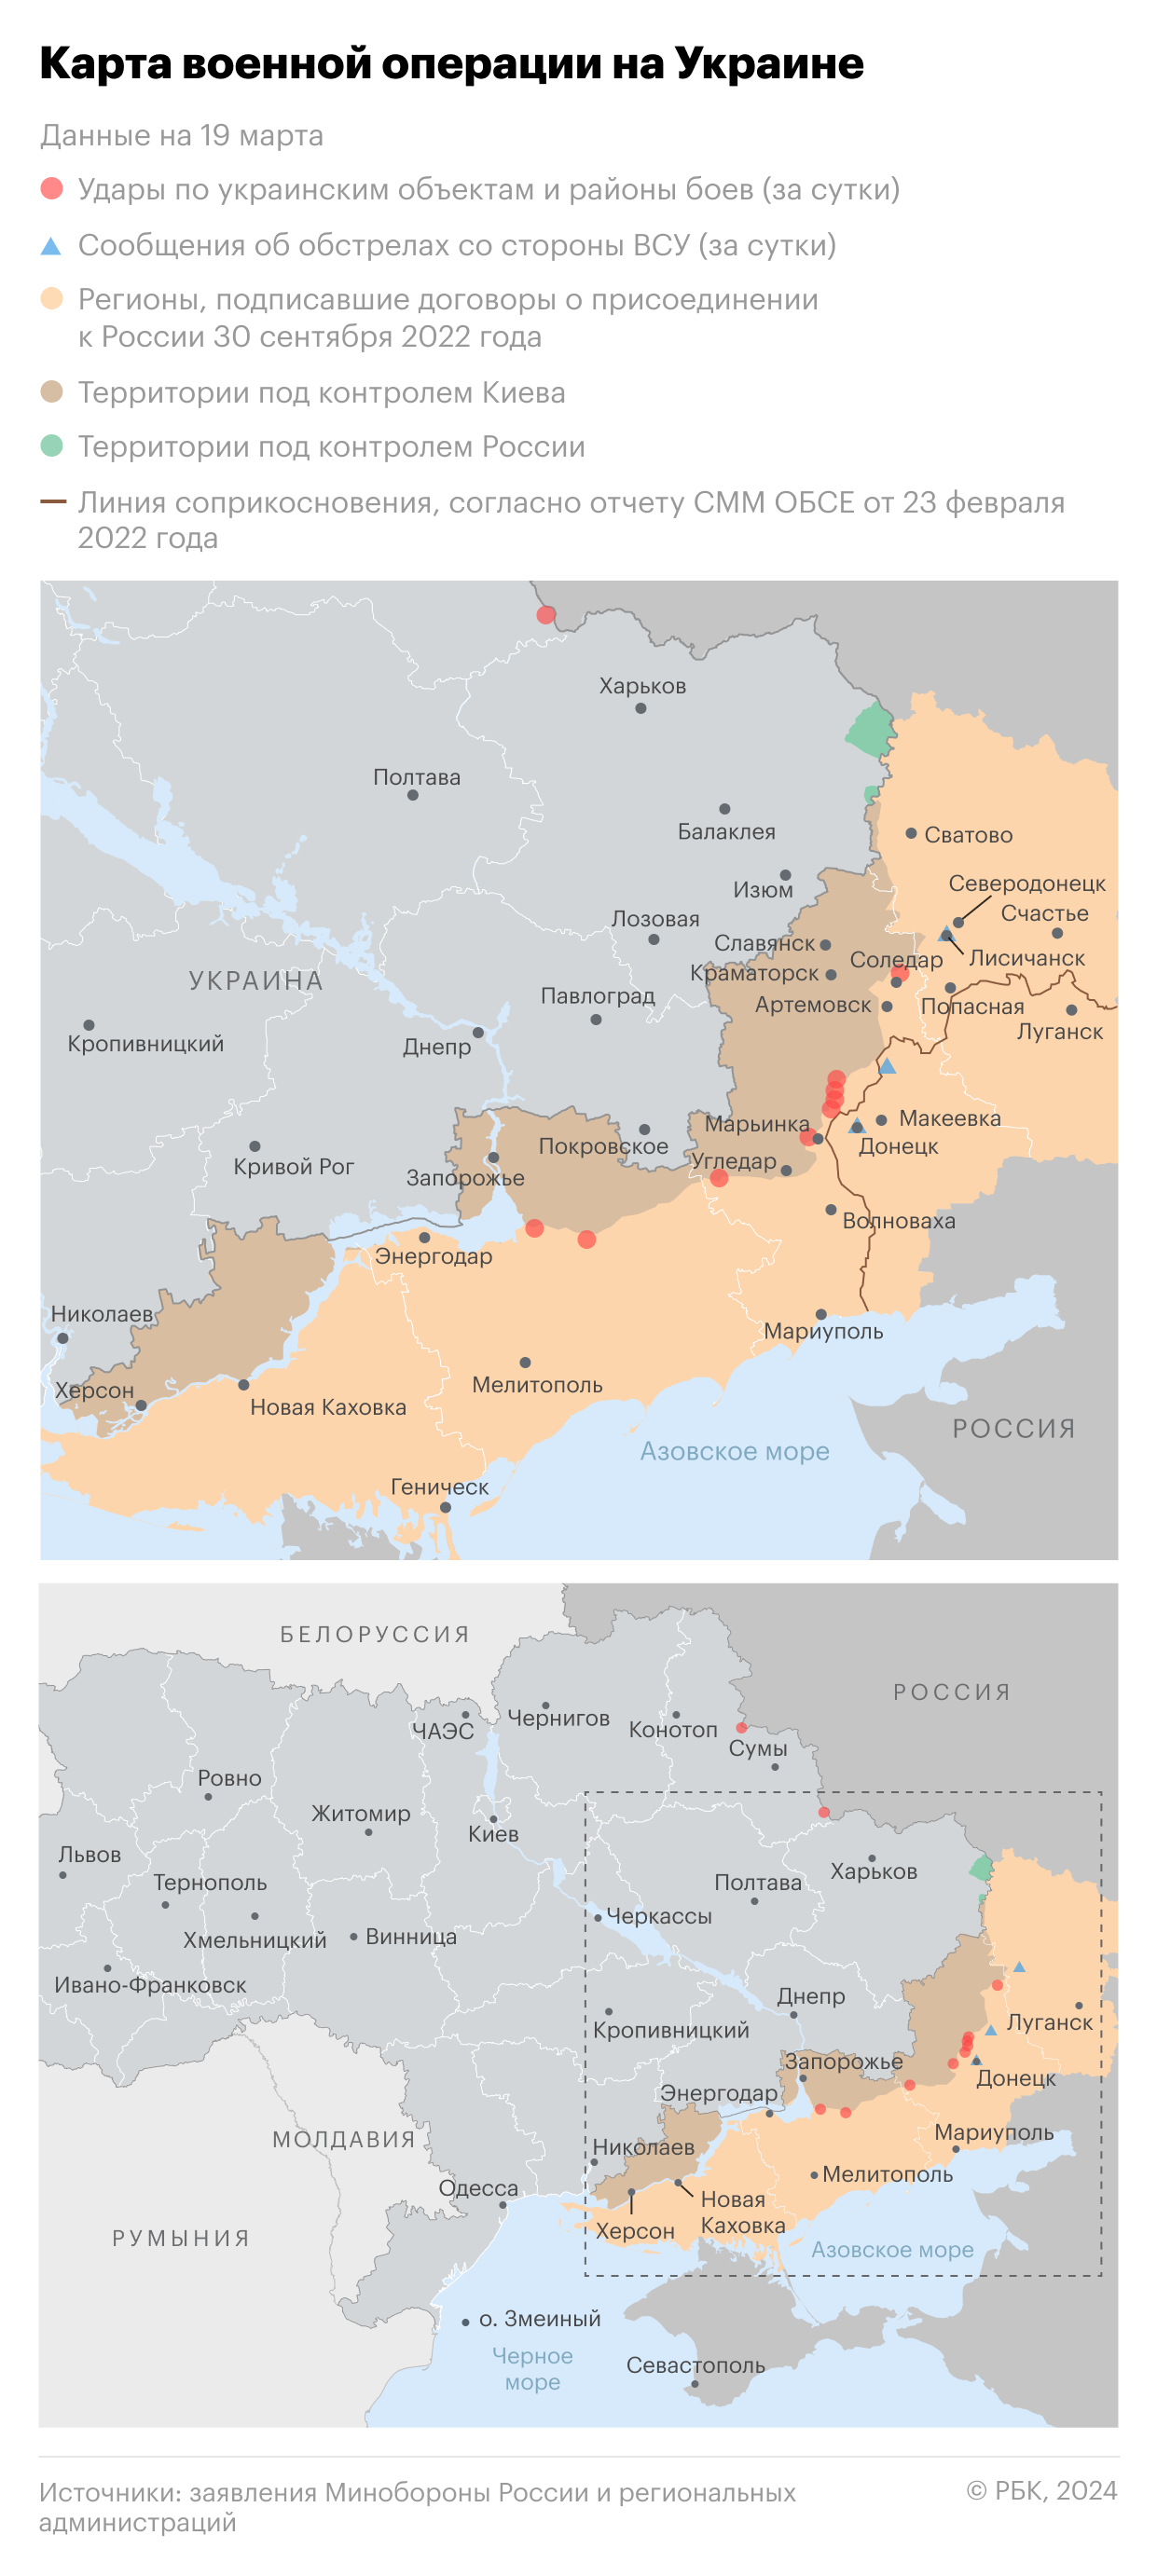 Военная операция на Украине. Карта на 19 марта